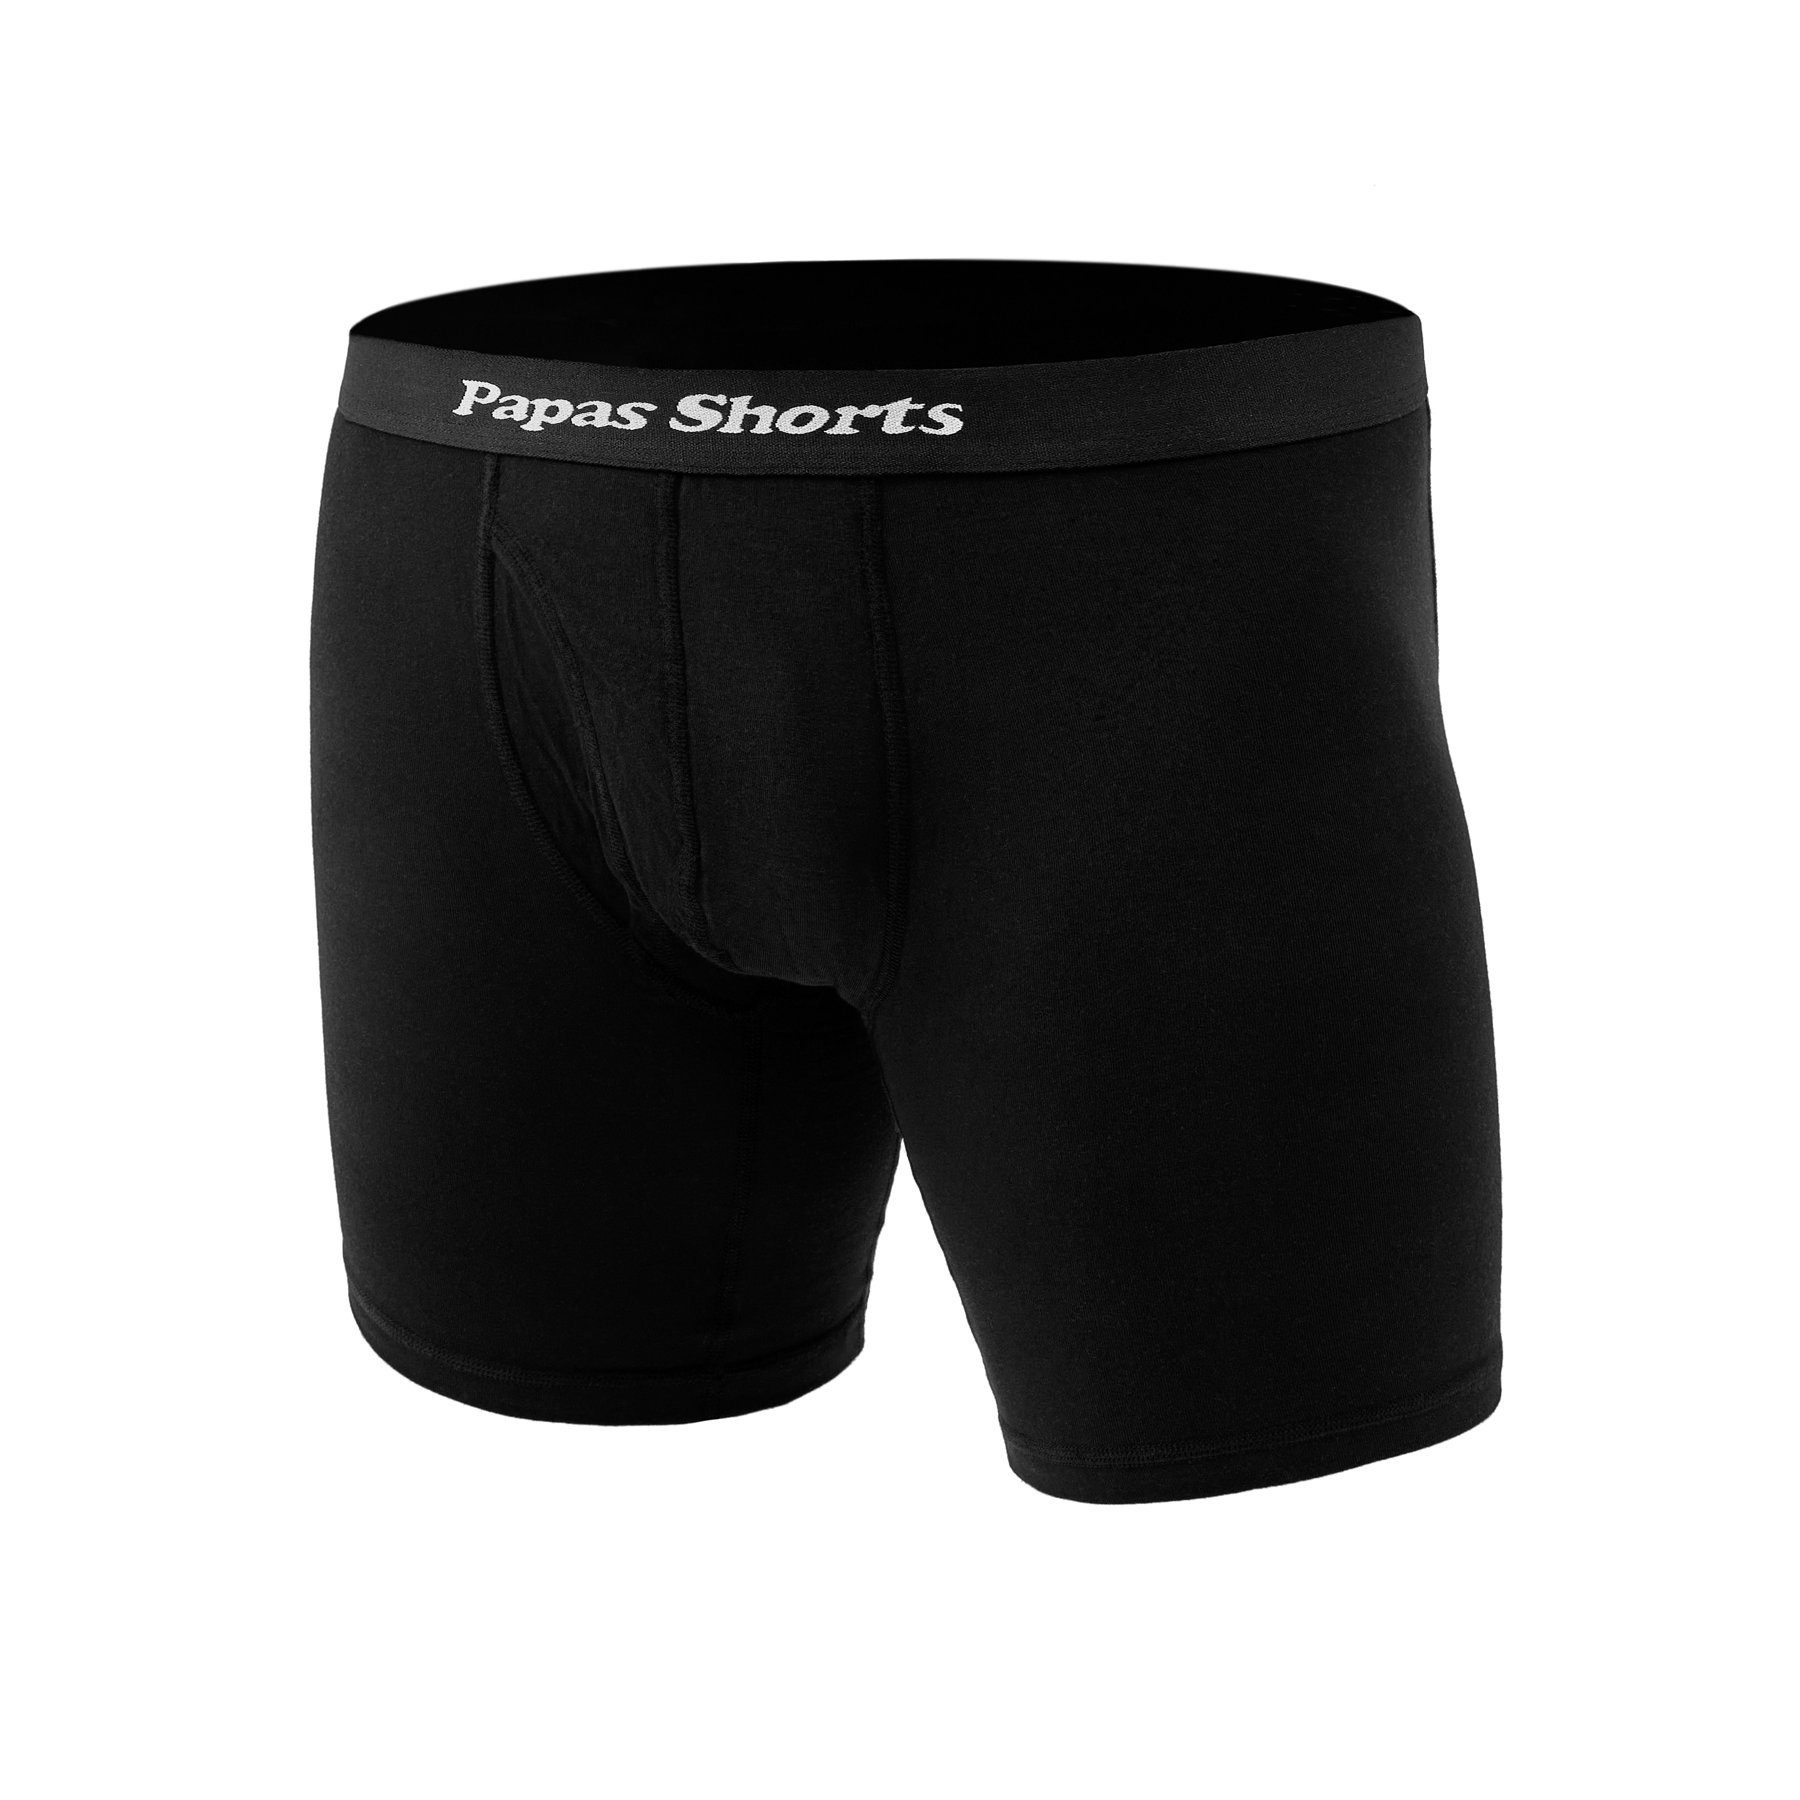 Papas Shorts Boxershorts gegen aus mit Zwicken Beinlänge Buxe Schwarze 3er-Pack) weichem Schritt extra Modal im (Packung